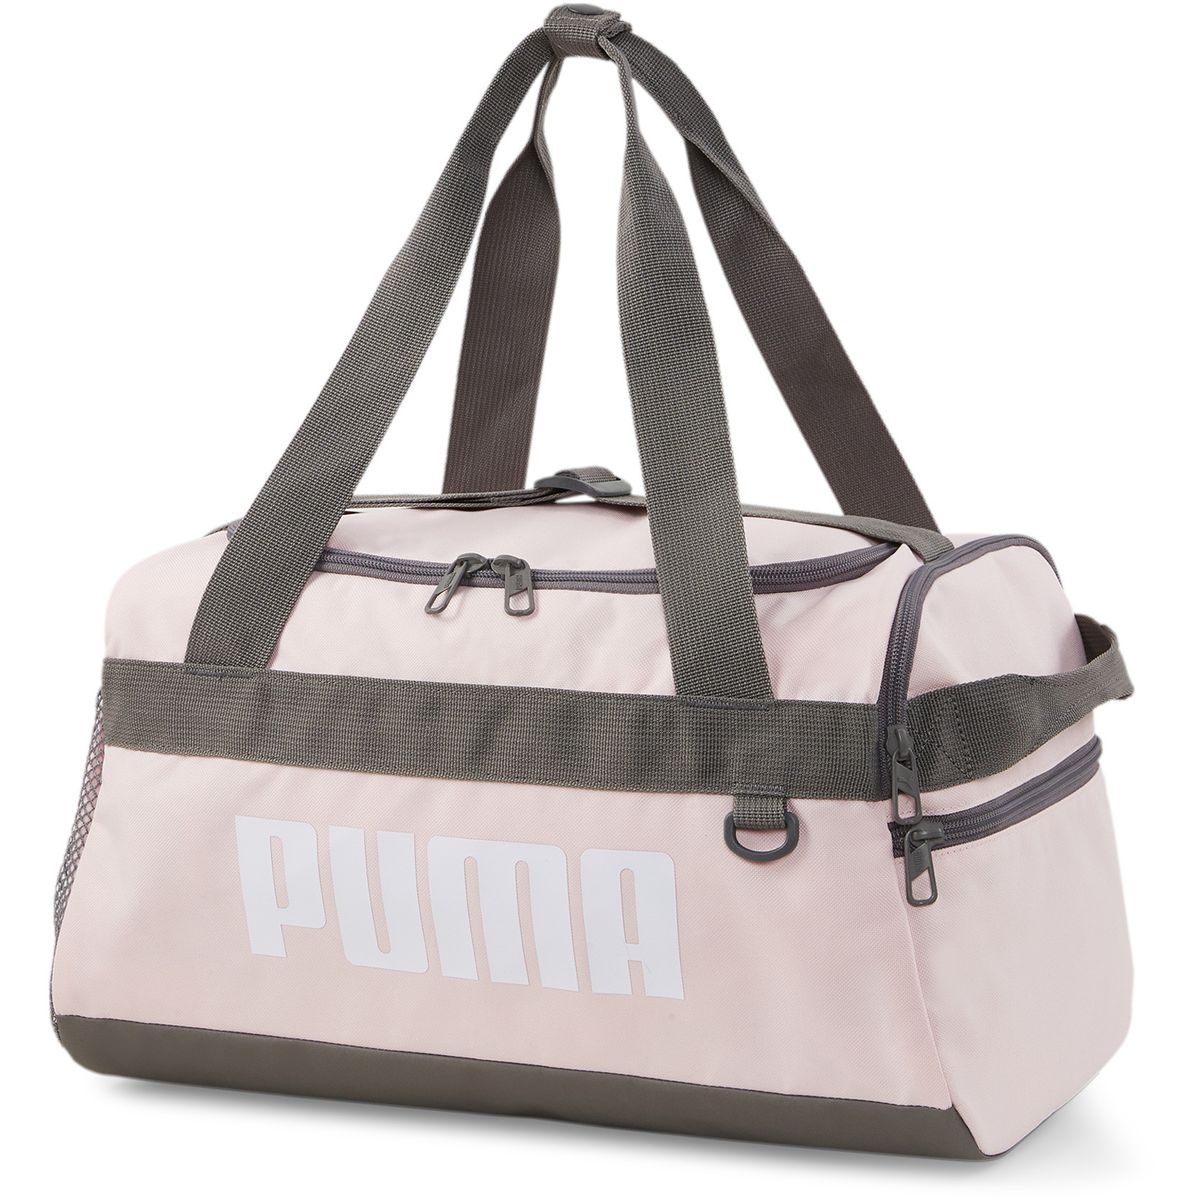 Puma Challenger Duffel Bag XS Sporttasche